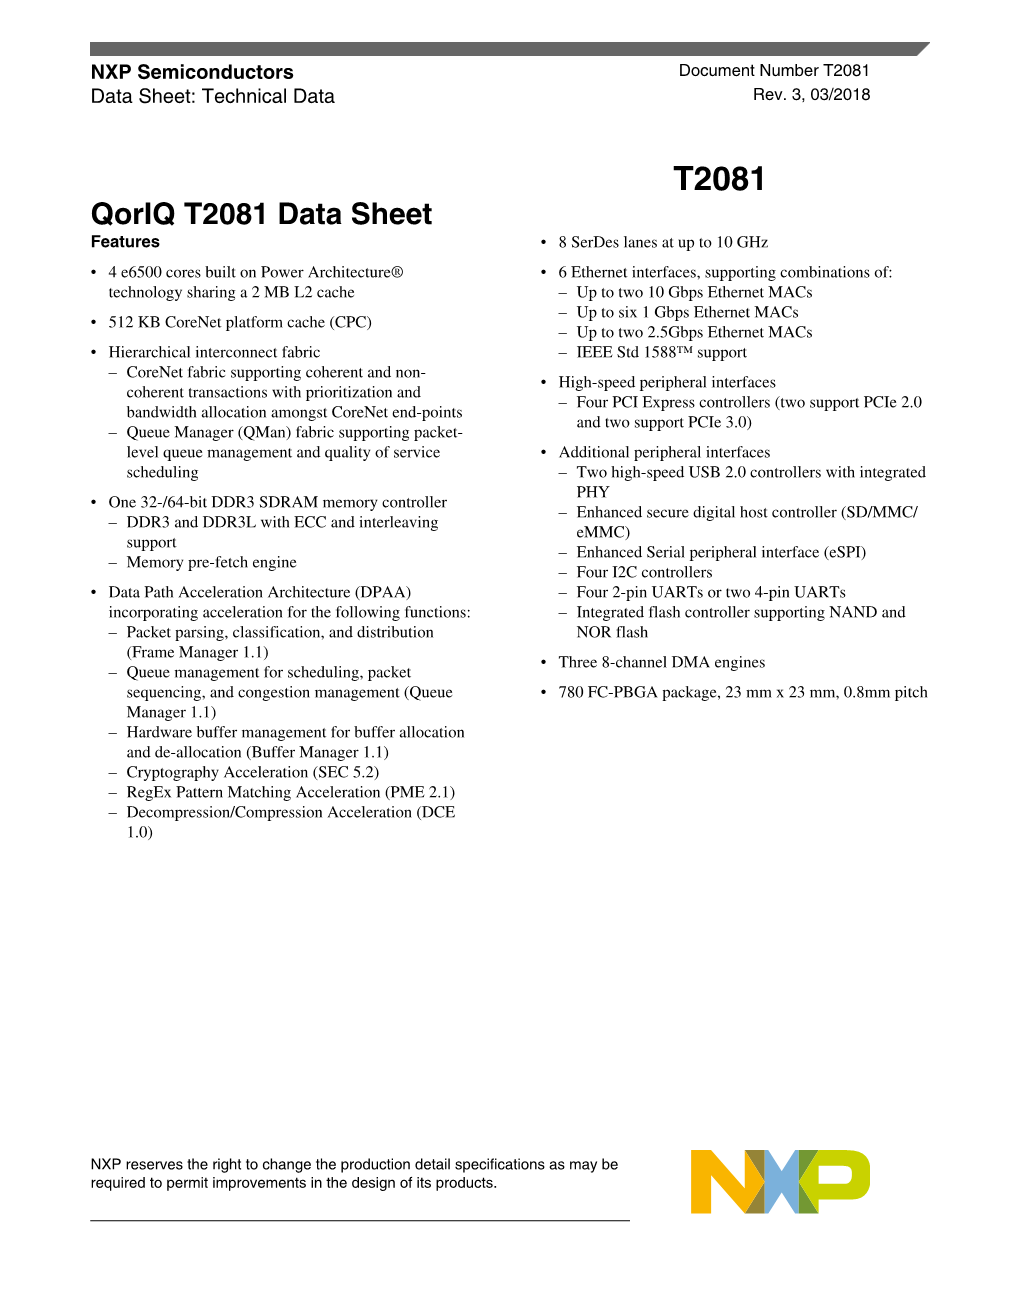 Qoriq T2081 Data Sheet